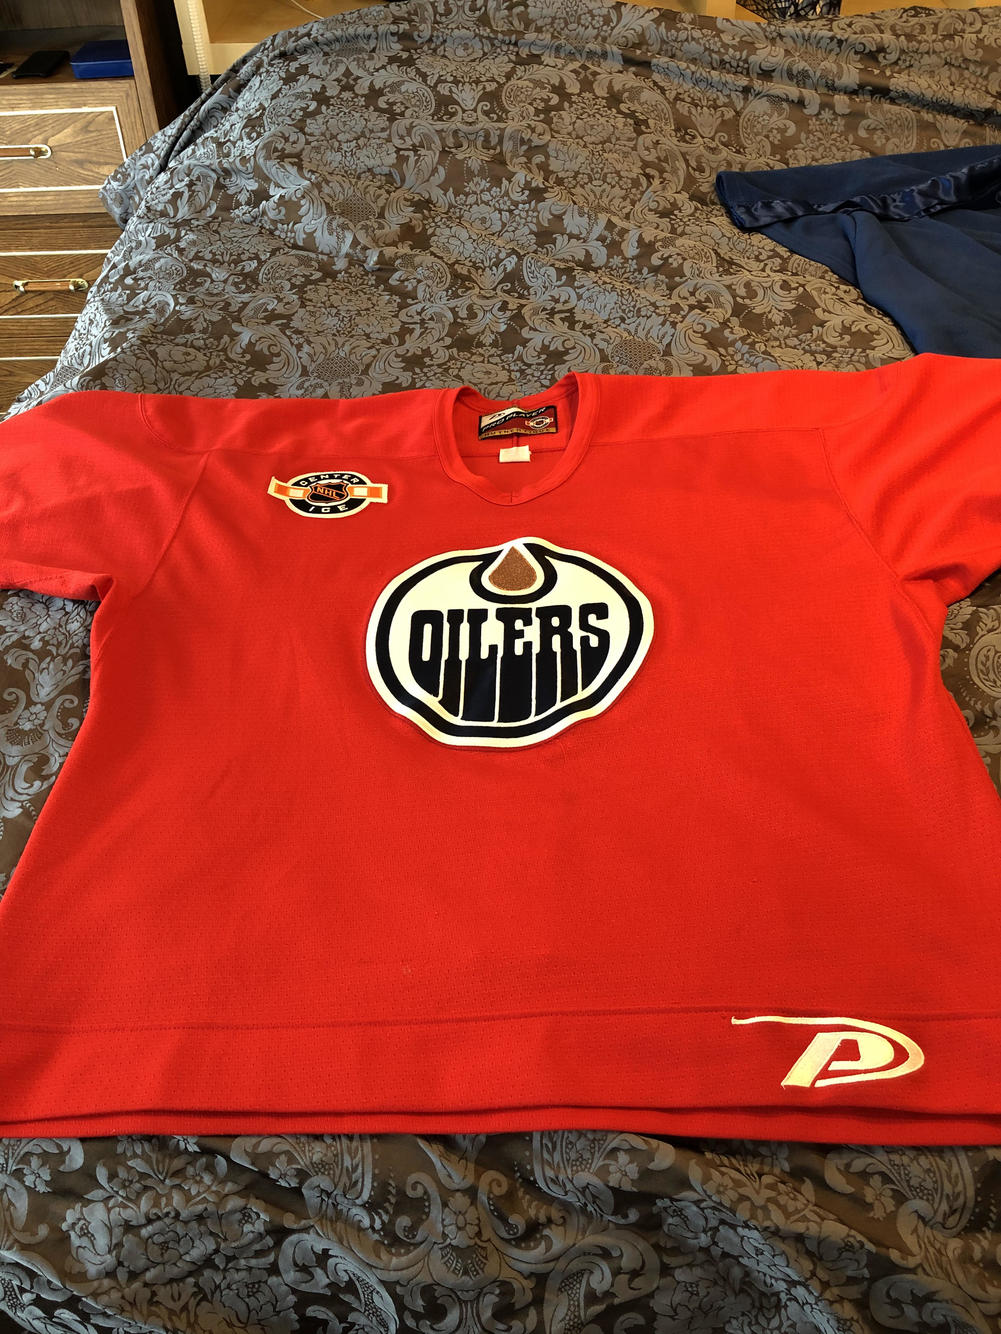 Edmonton Oilers practice jersey